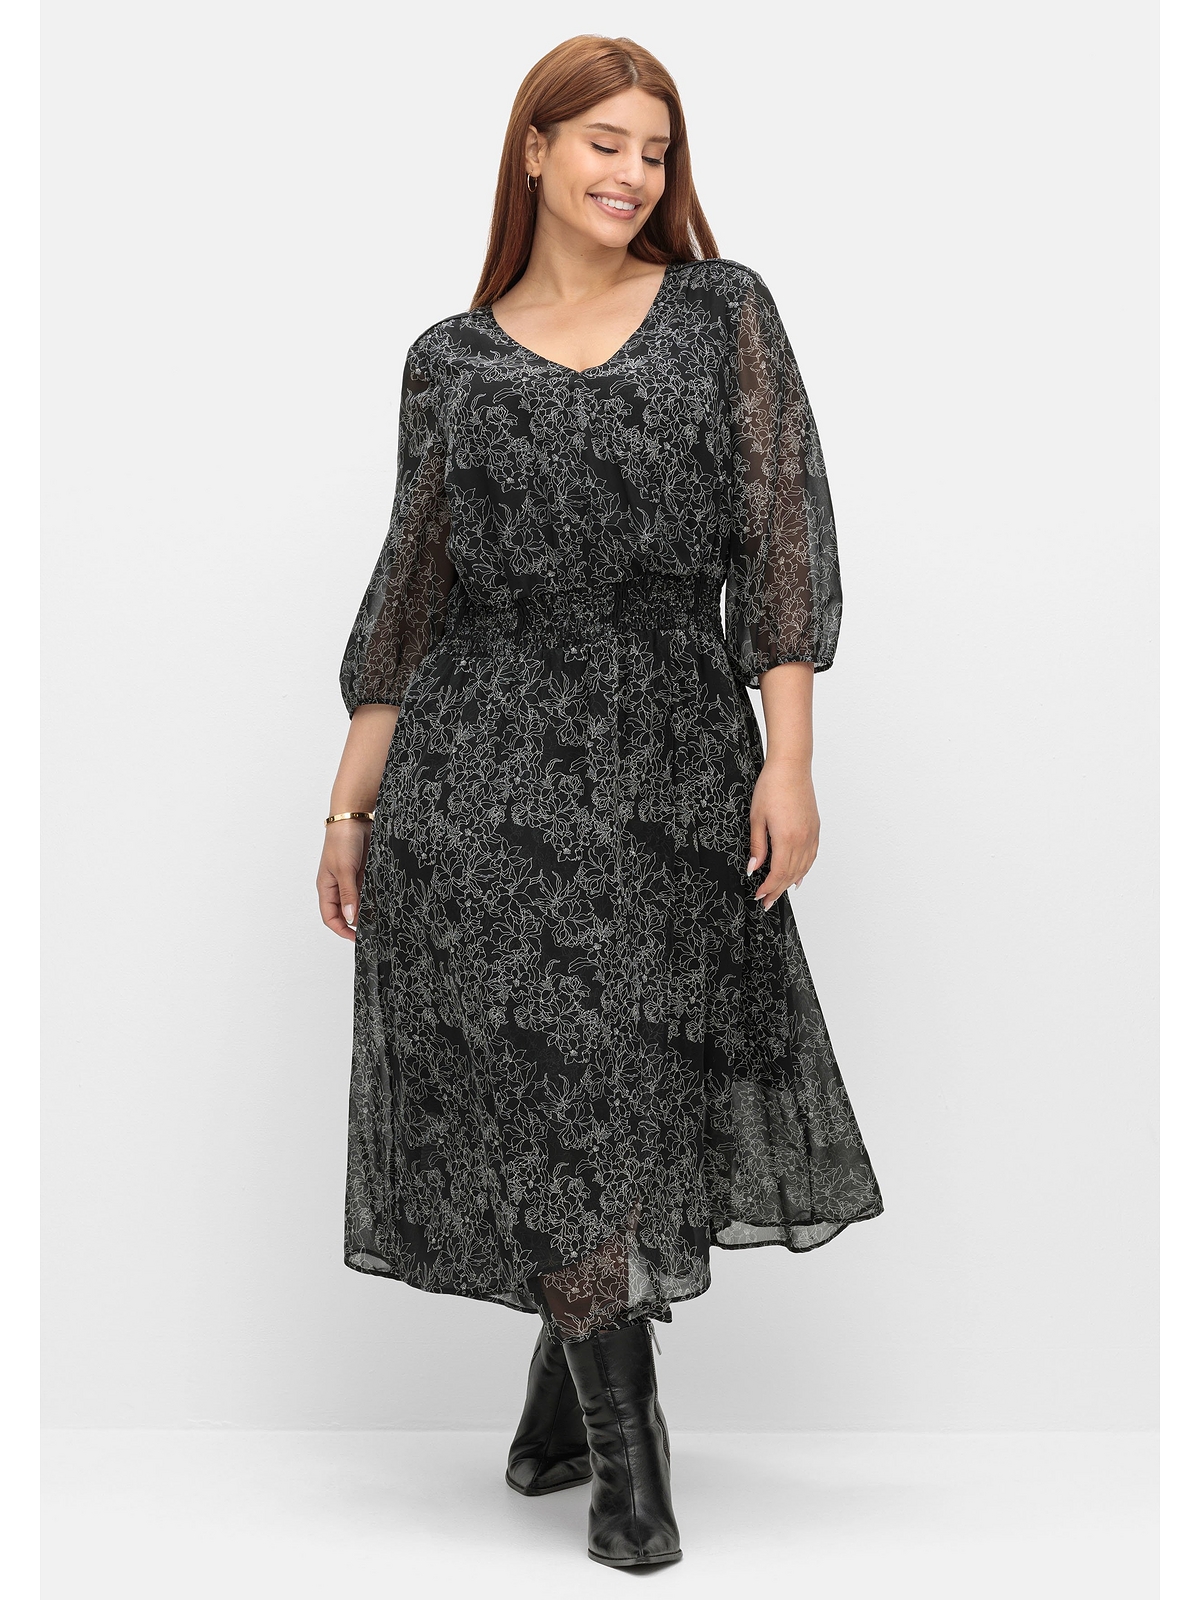 Платье sheego Chiffon, черный